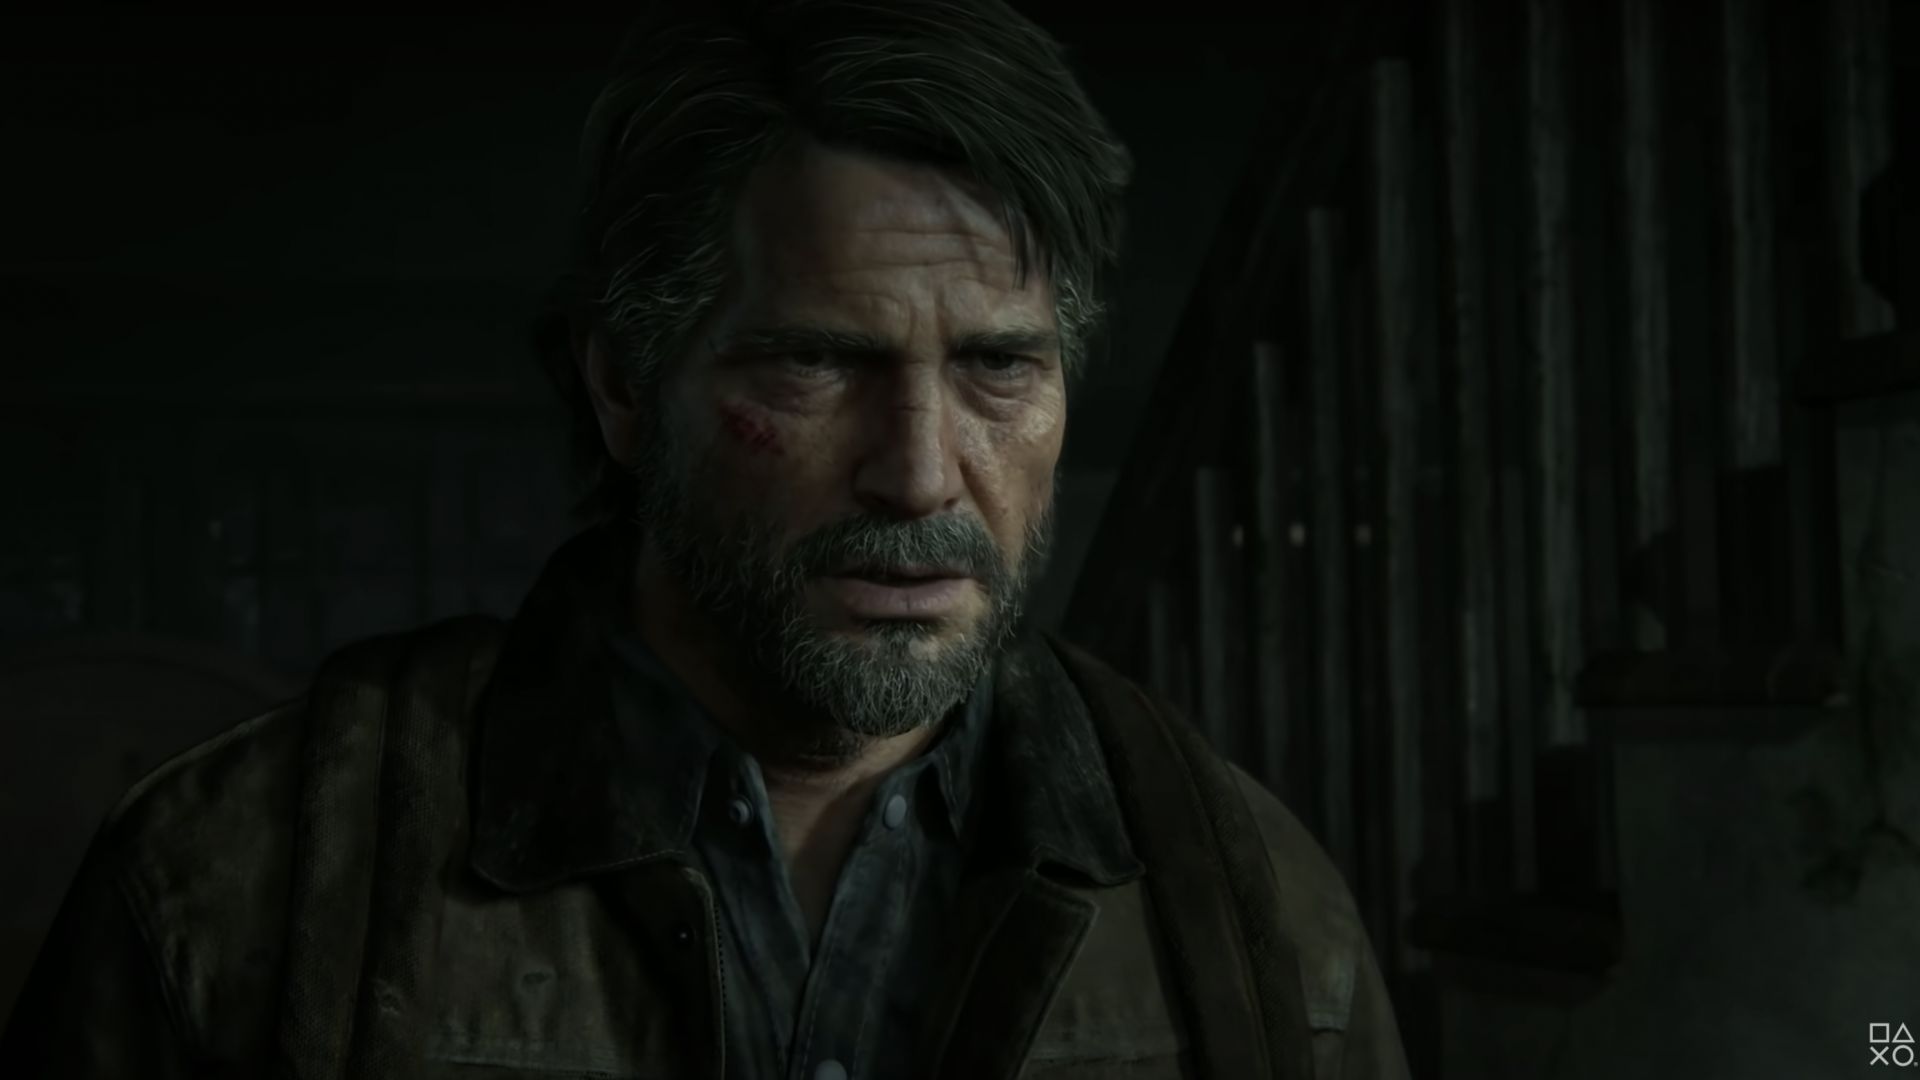 En attendant la saison 2 de la série The Last of Us, testez vos connaissances sur la saga culte du jeu vidéo avec ces 10 questions !